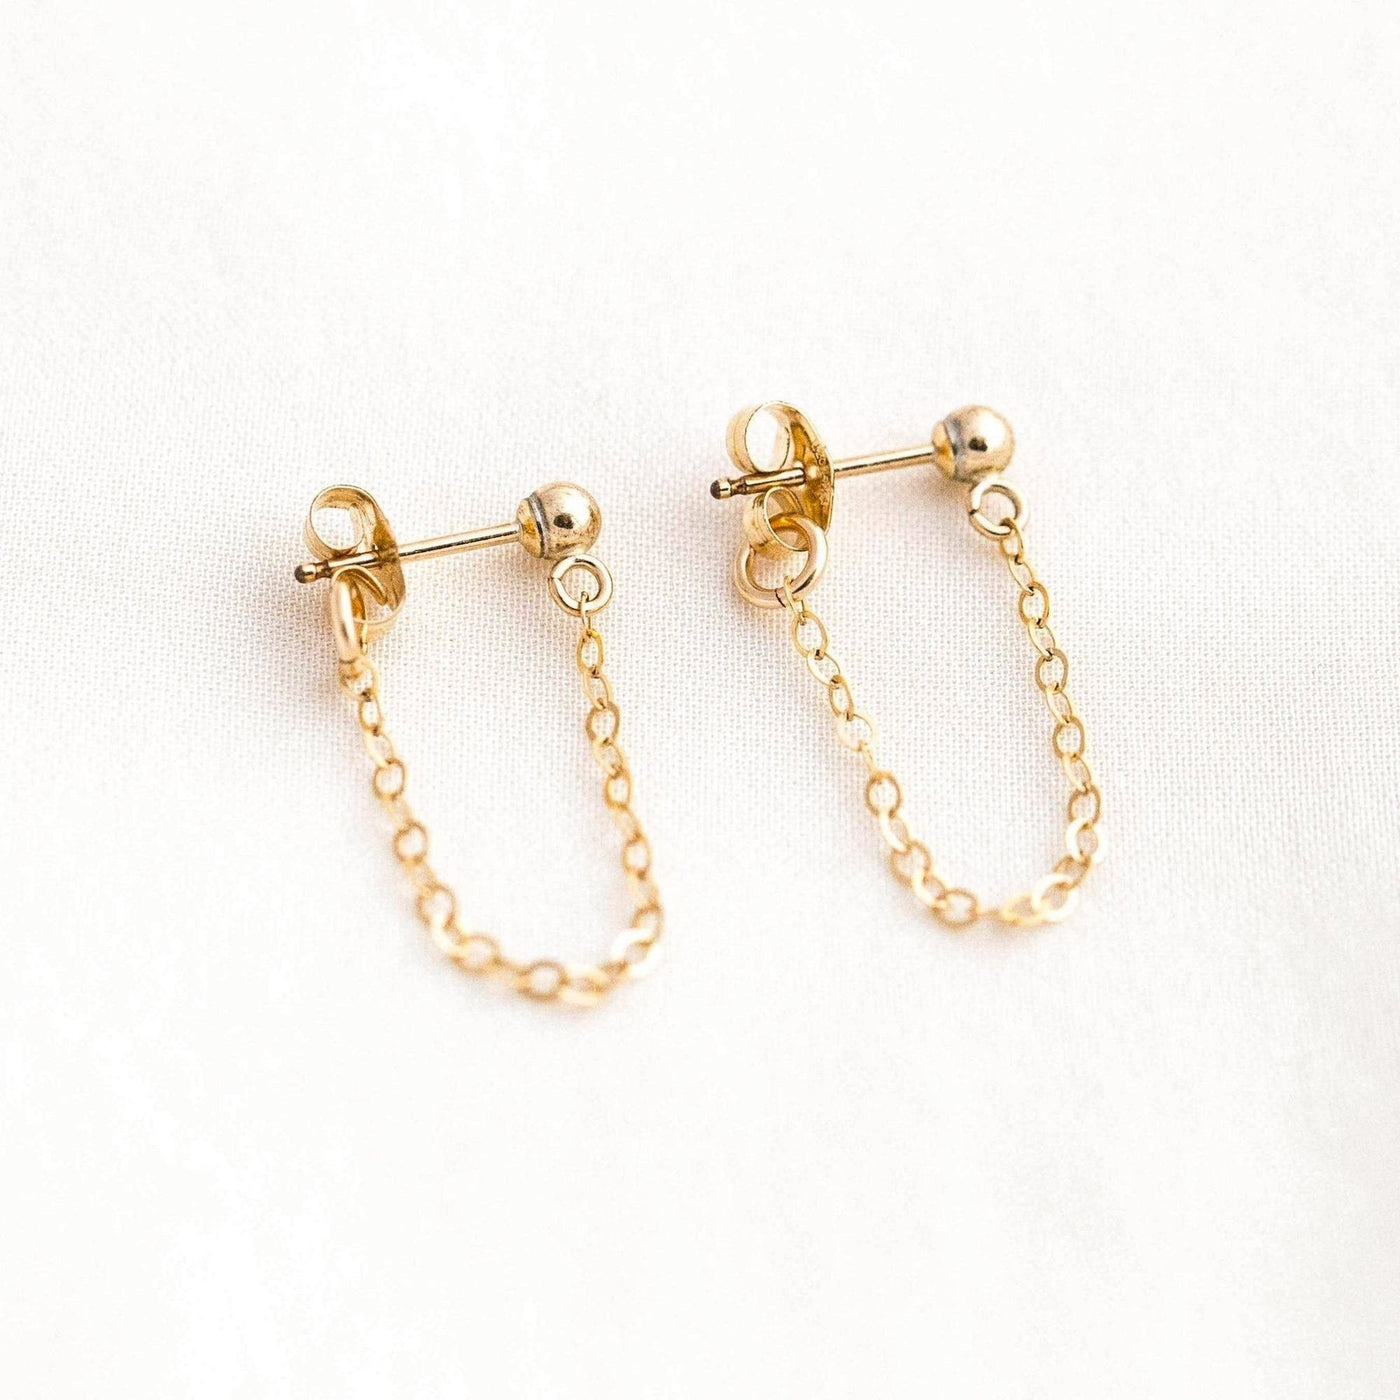 Chain Stud Earrings by Simple & Dainty Jewelry